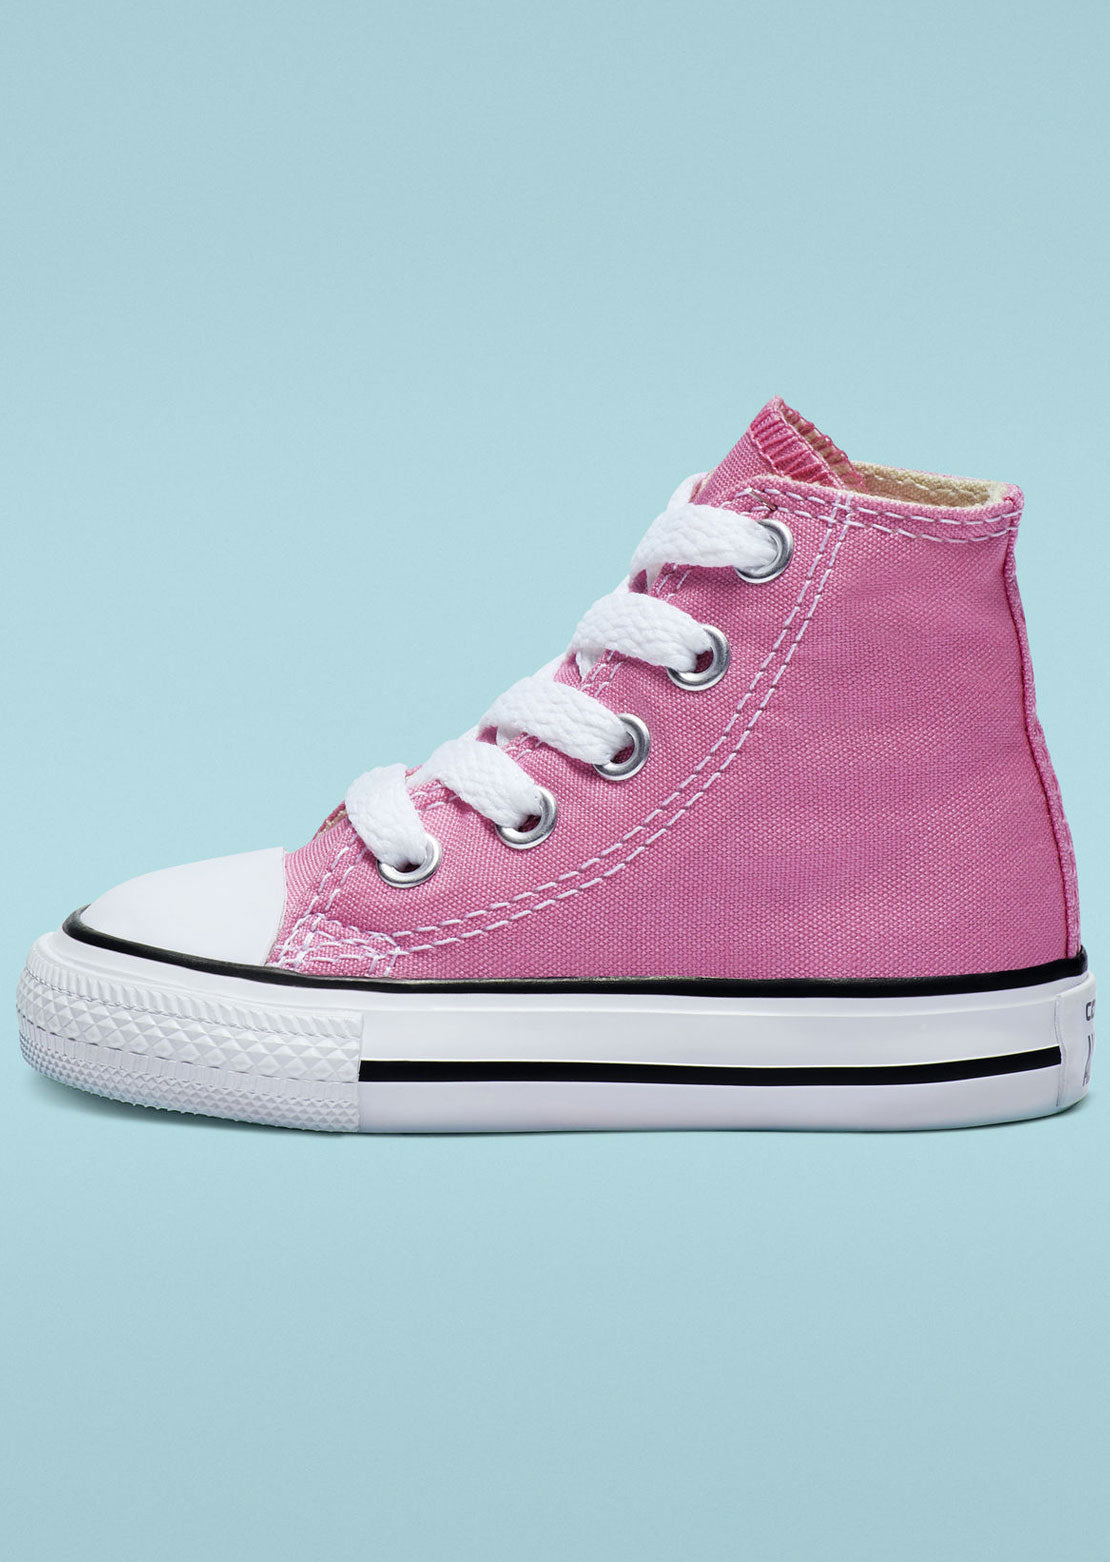 Converse Toddler Chuck Taylor Hi Top Shoes Pink